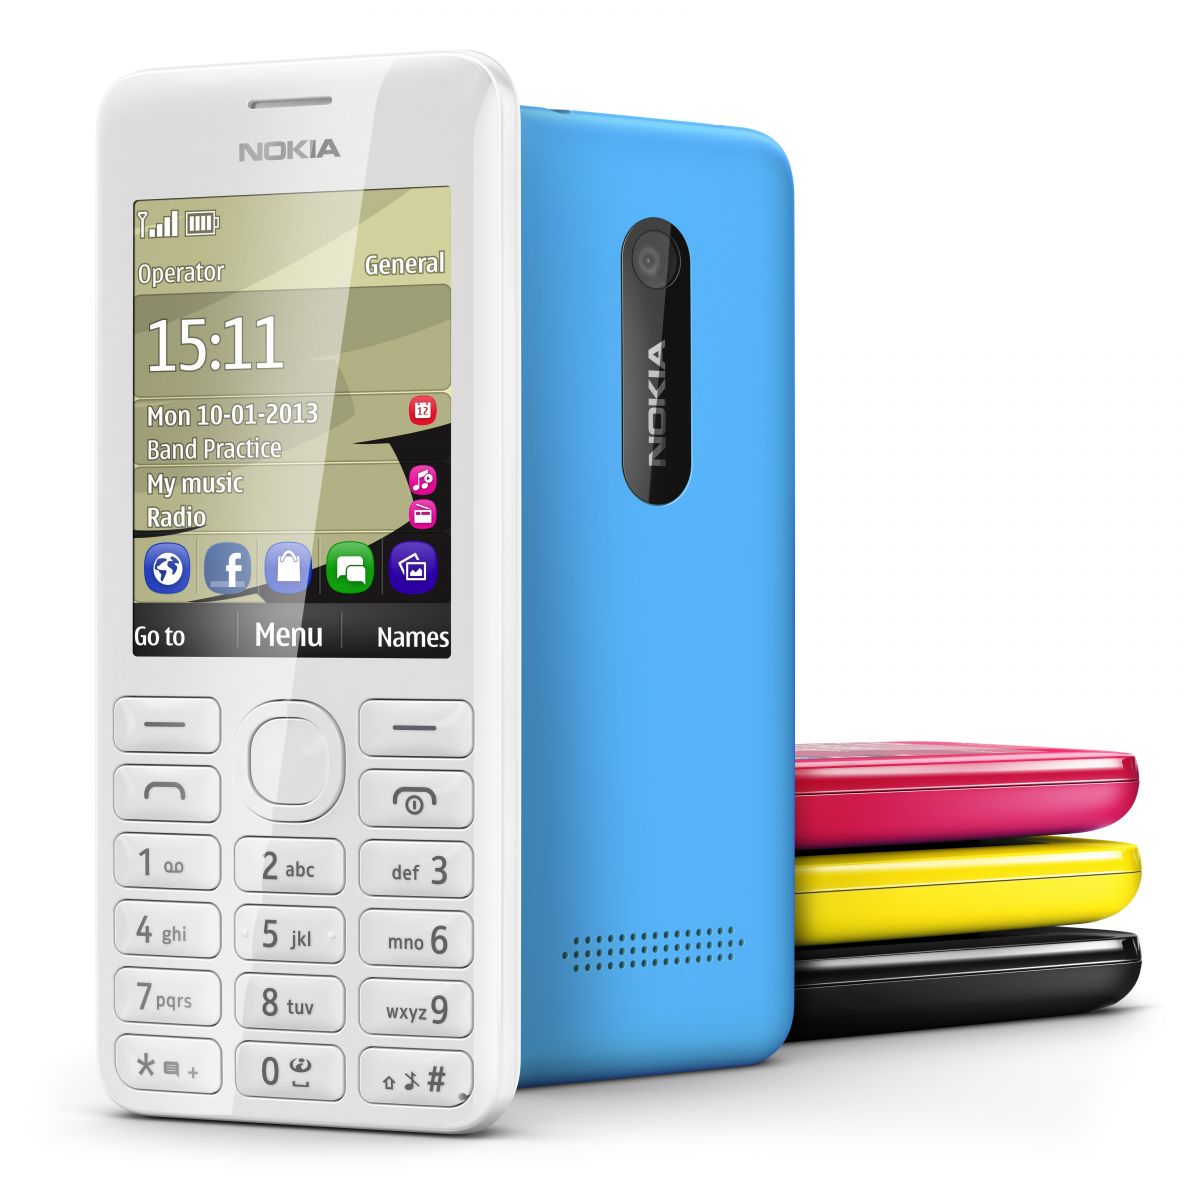 Nokia 206 Dual SIM: On the go Phone